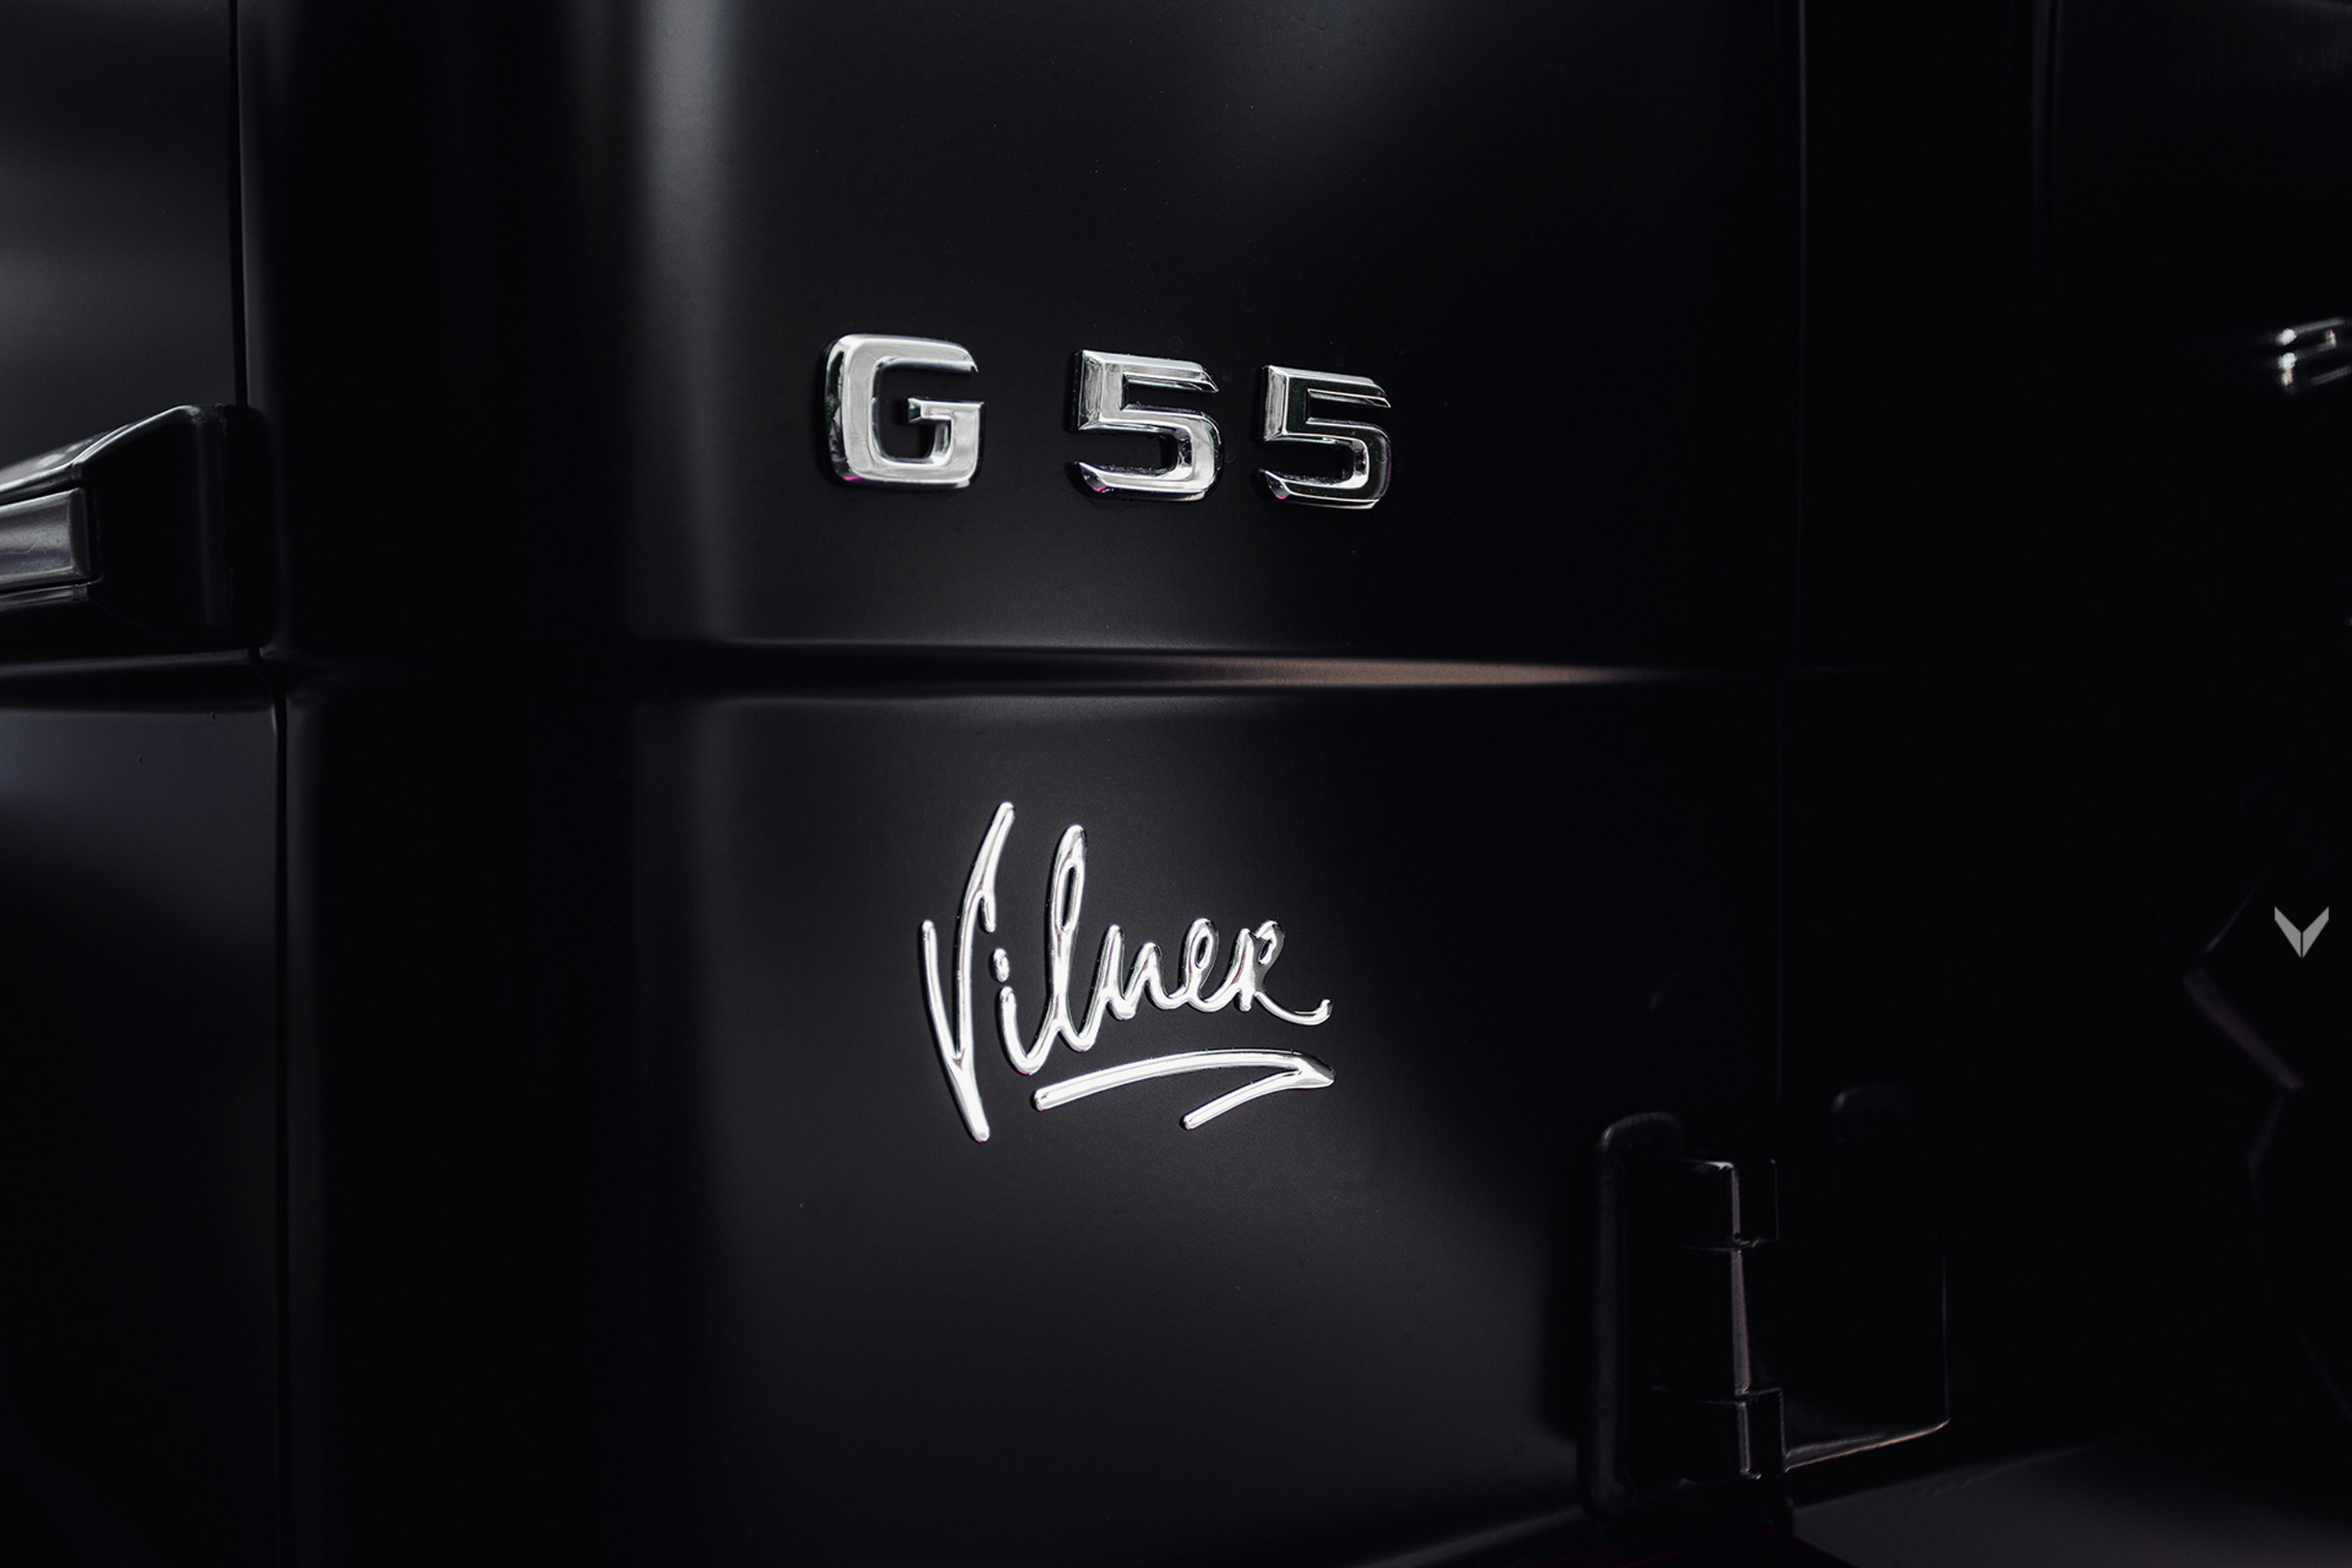 Vilner Mercedes-AMG G-55